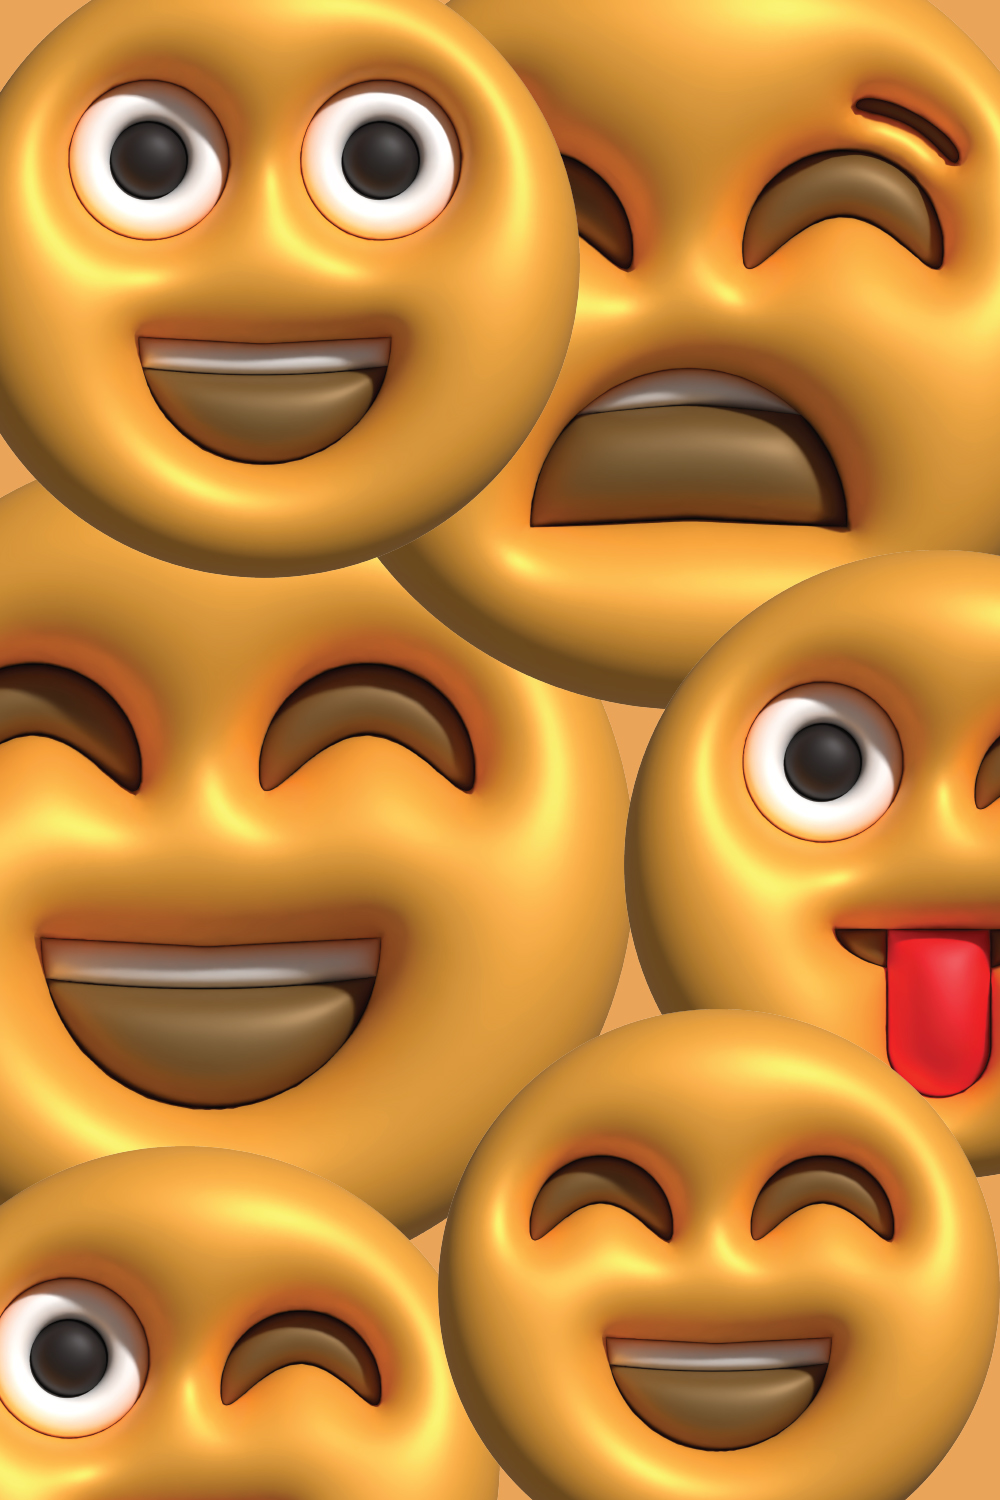 3D Emoticon pinterest preview image.